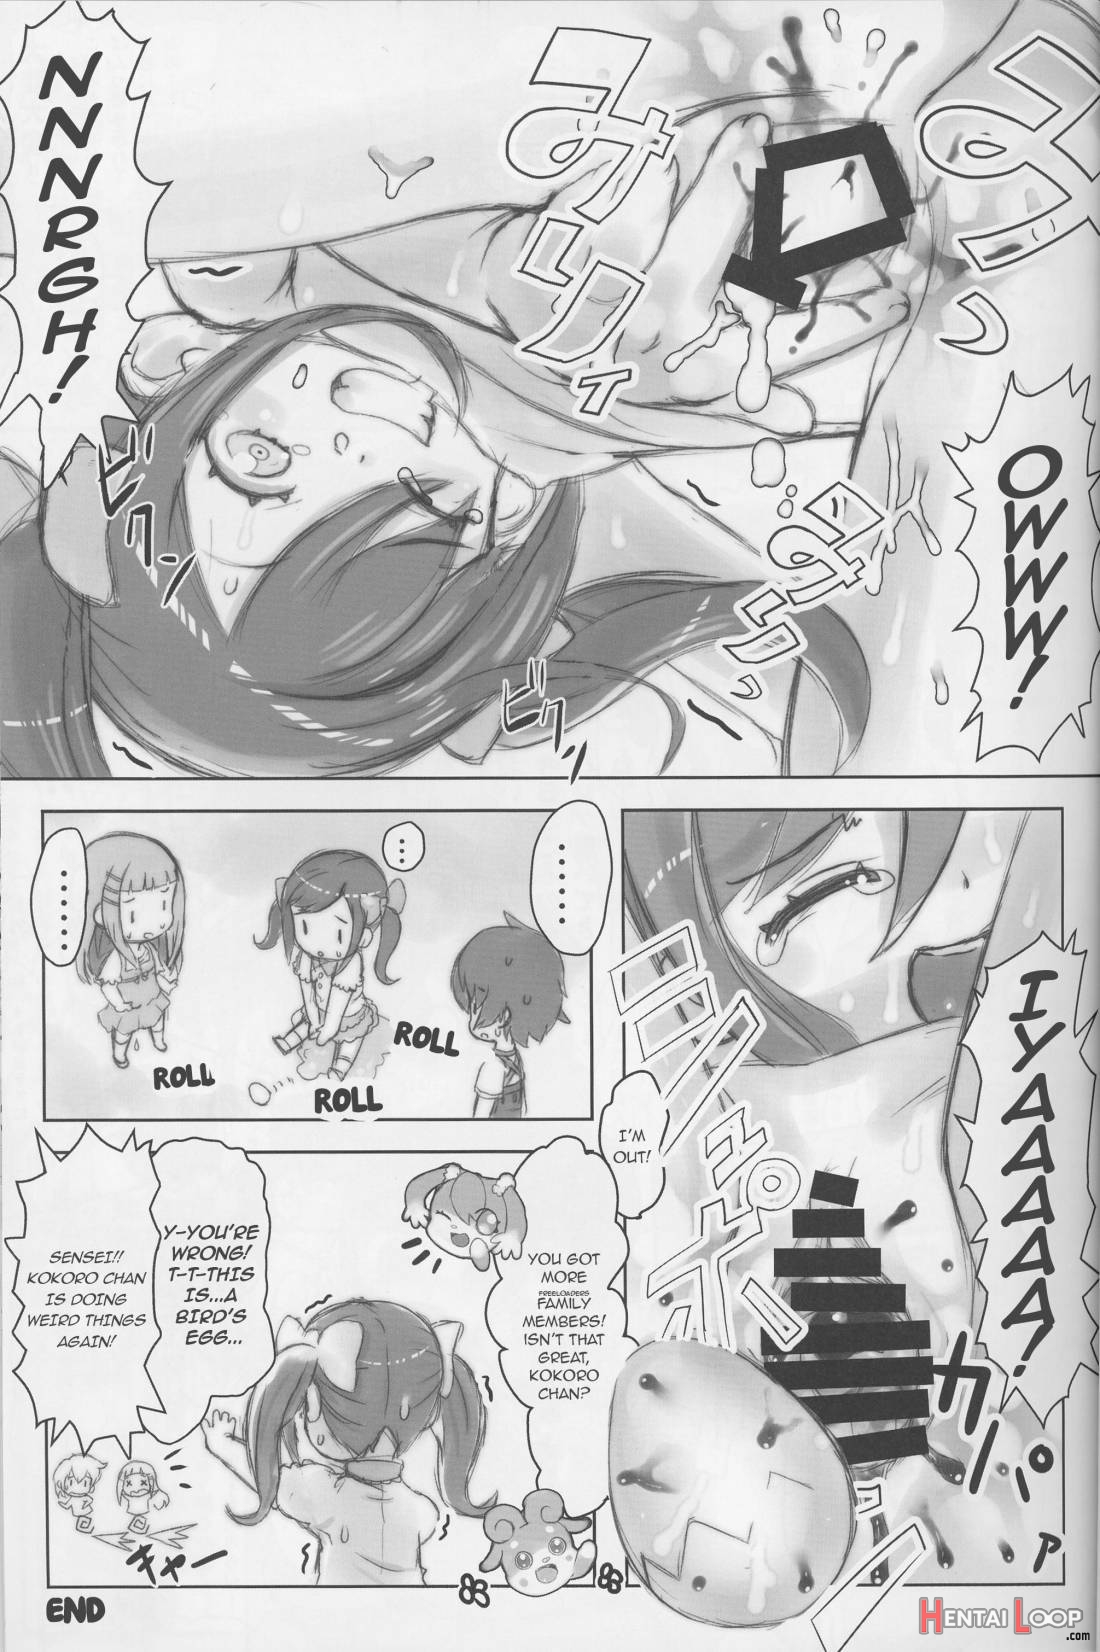 Himitsu no KKRMnk page 25